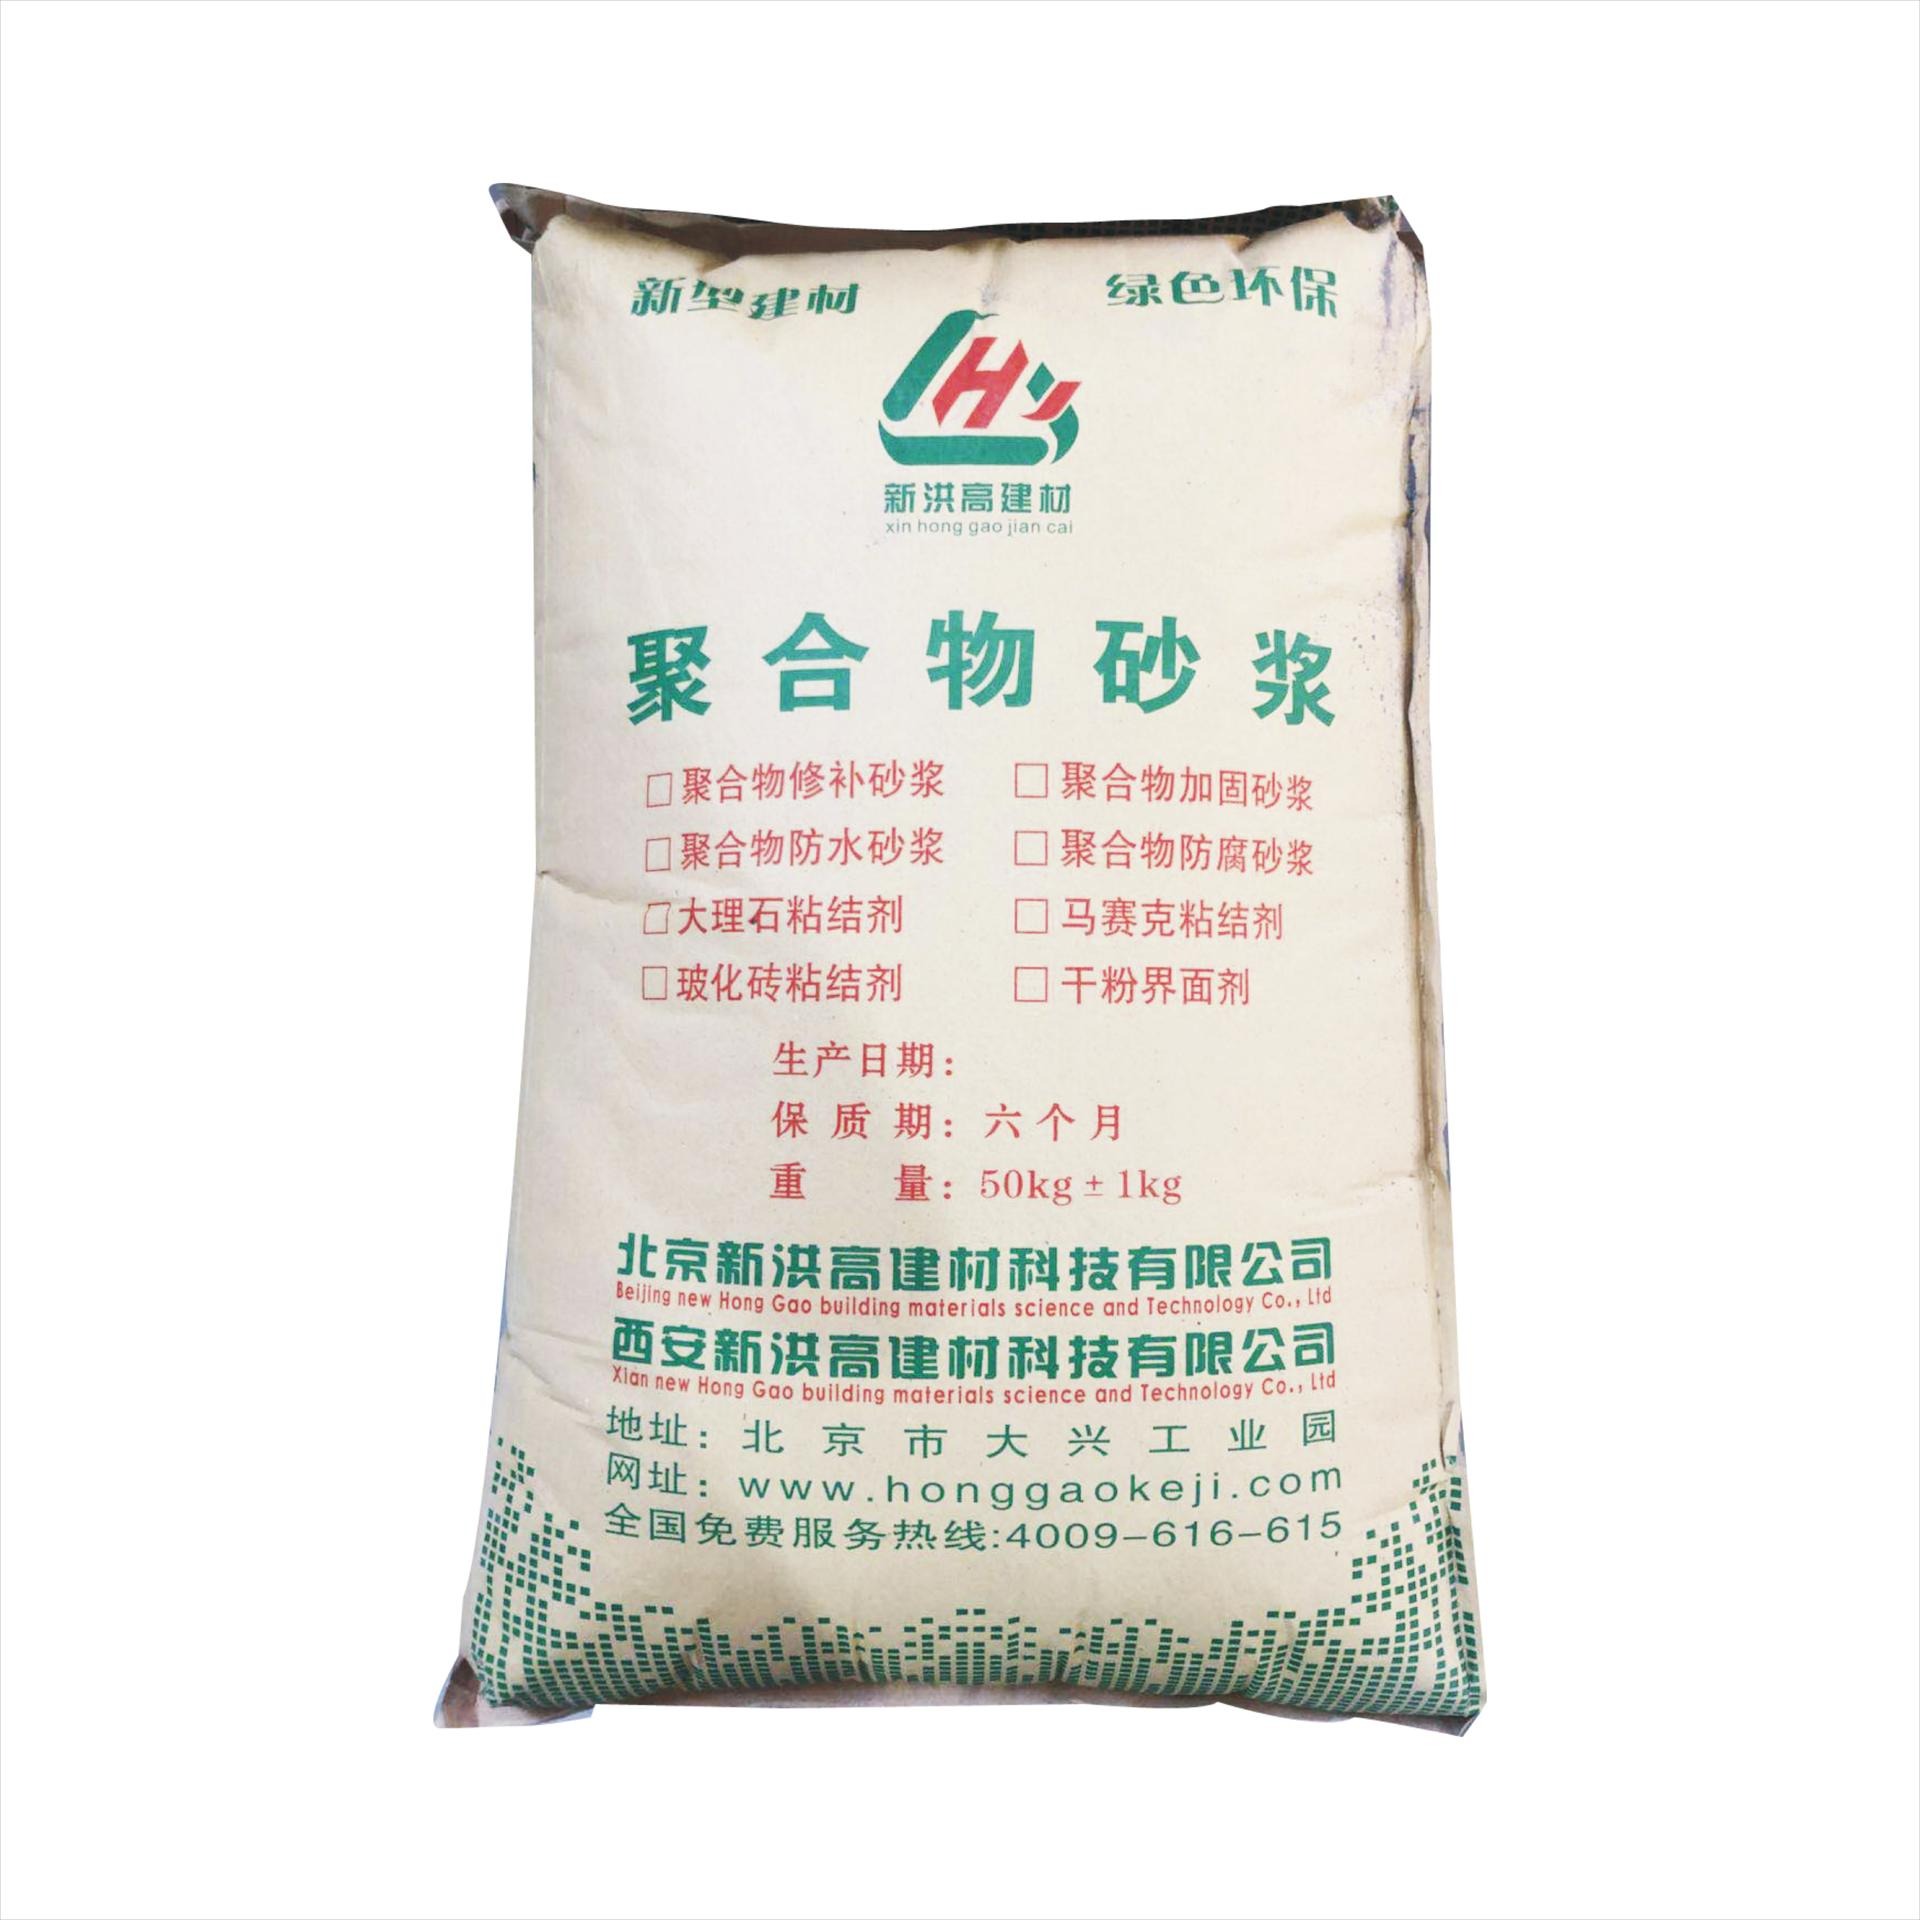 榆林聚合物加固砂浆直销厂家  西安新洪高聚合物加固砂浆批发 价格优惠 大量批发